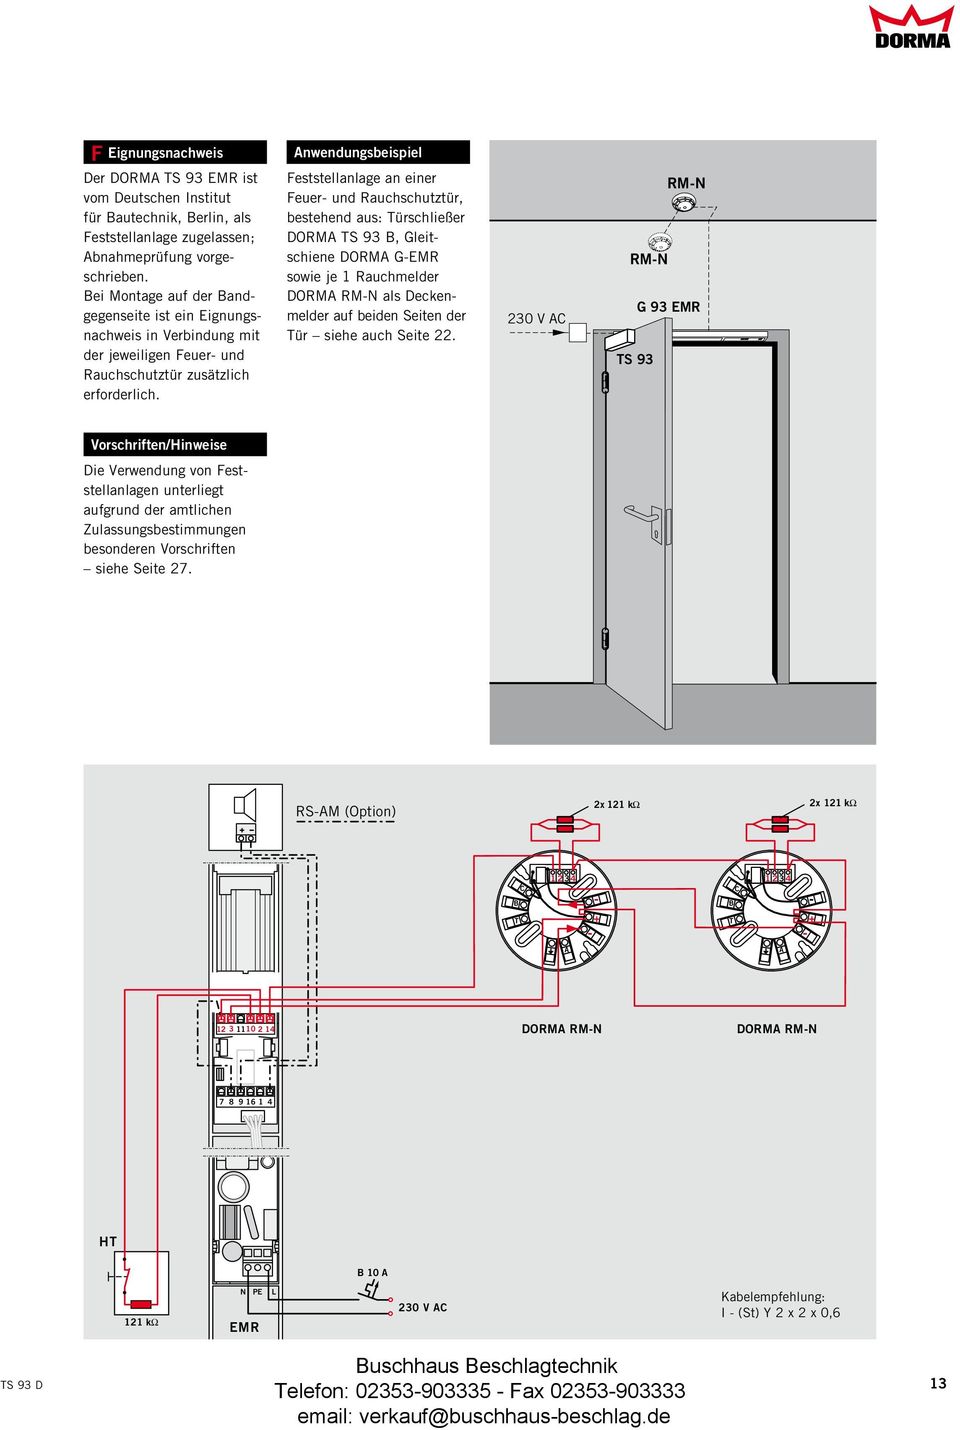 Feststellanlage an einer Feuer- und Rauchschutztür, bestehend aus: Türschließer DORMA TS 93 B, Gleitschiene DORMA G-EMR sowie je 1 Rauchmelder DORMA RM-N als Deckenmelder auf beiden Seiten der Tür